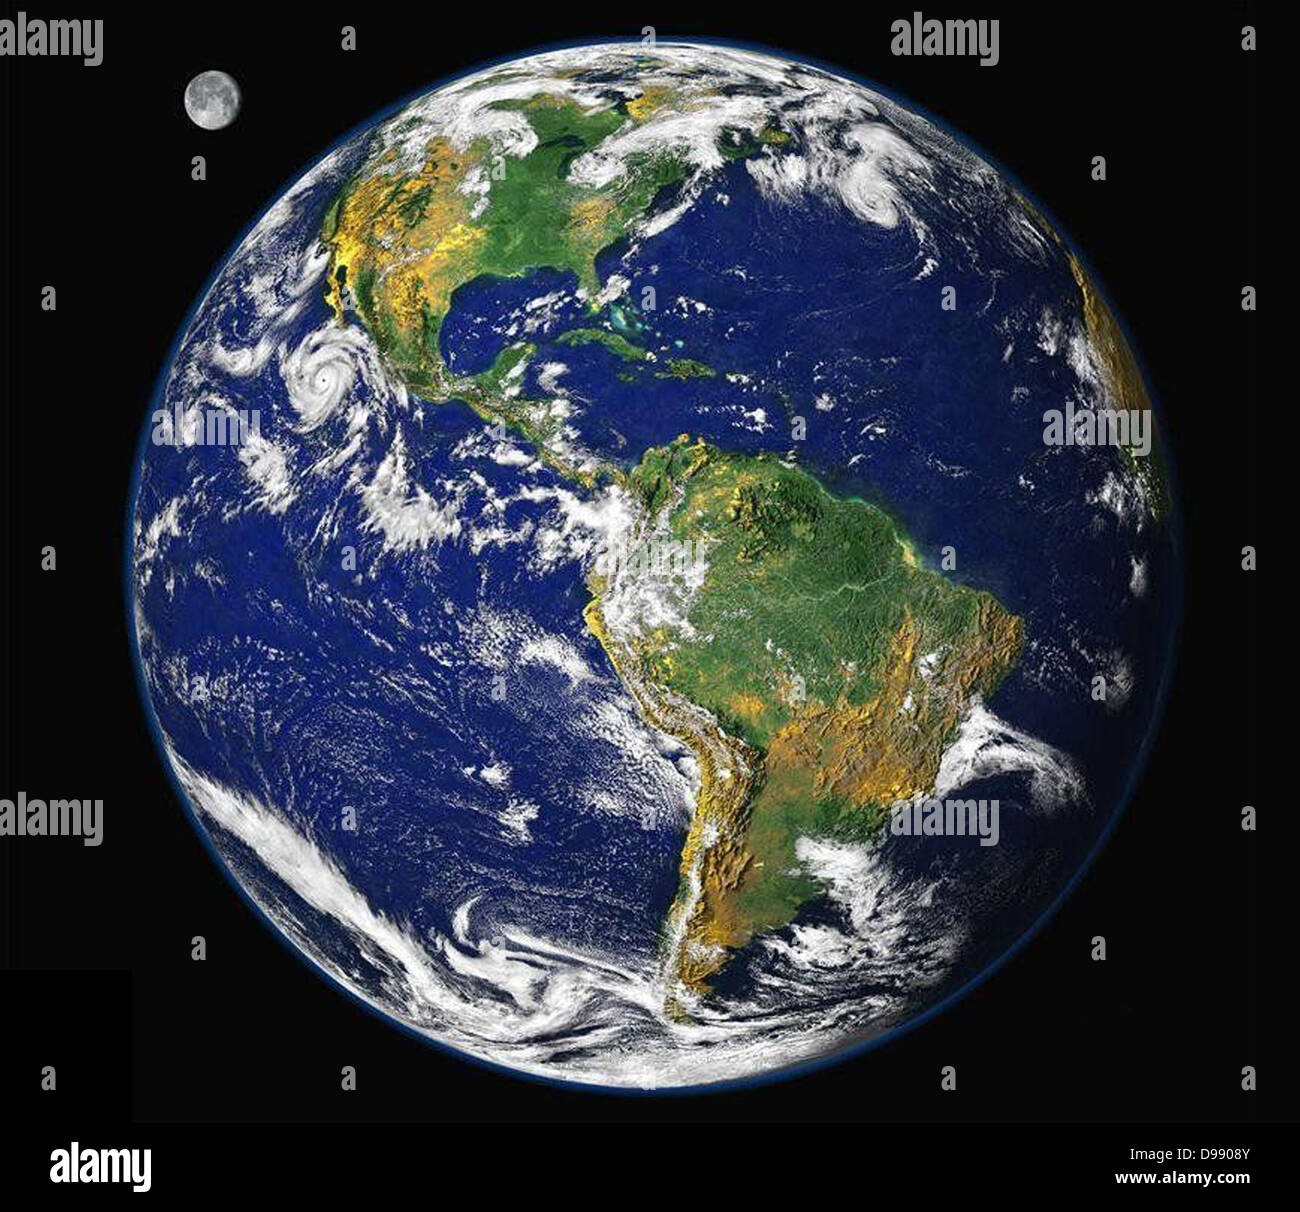 Die Erde vom Weltraum aus. Ein Blick auf den amerikanischen Kontinent, einschließlich der atlantischen und pazifischen Küsten ist der Mond zu sehen (oben links). Stockfoto